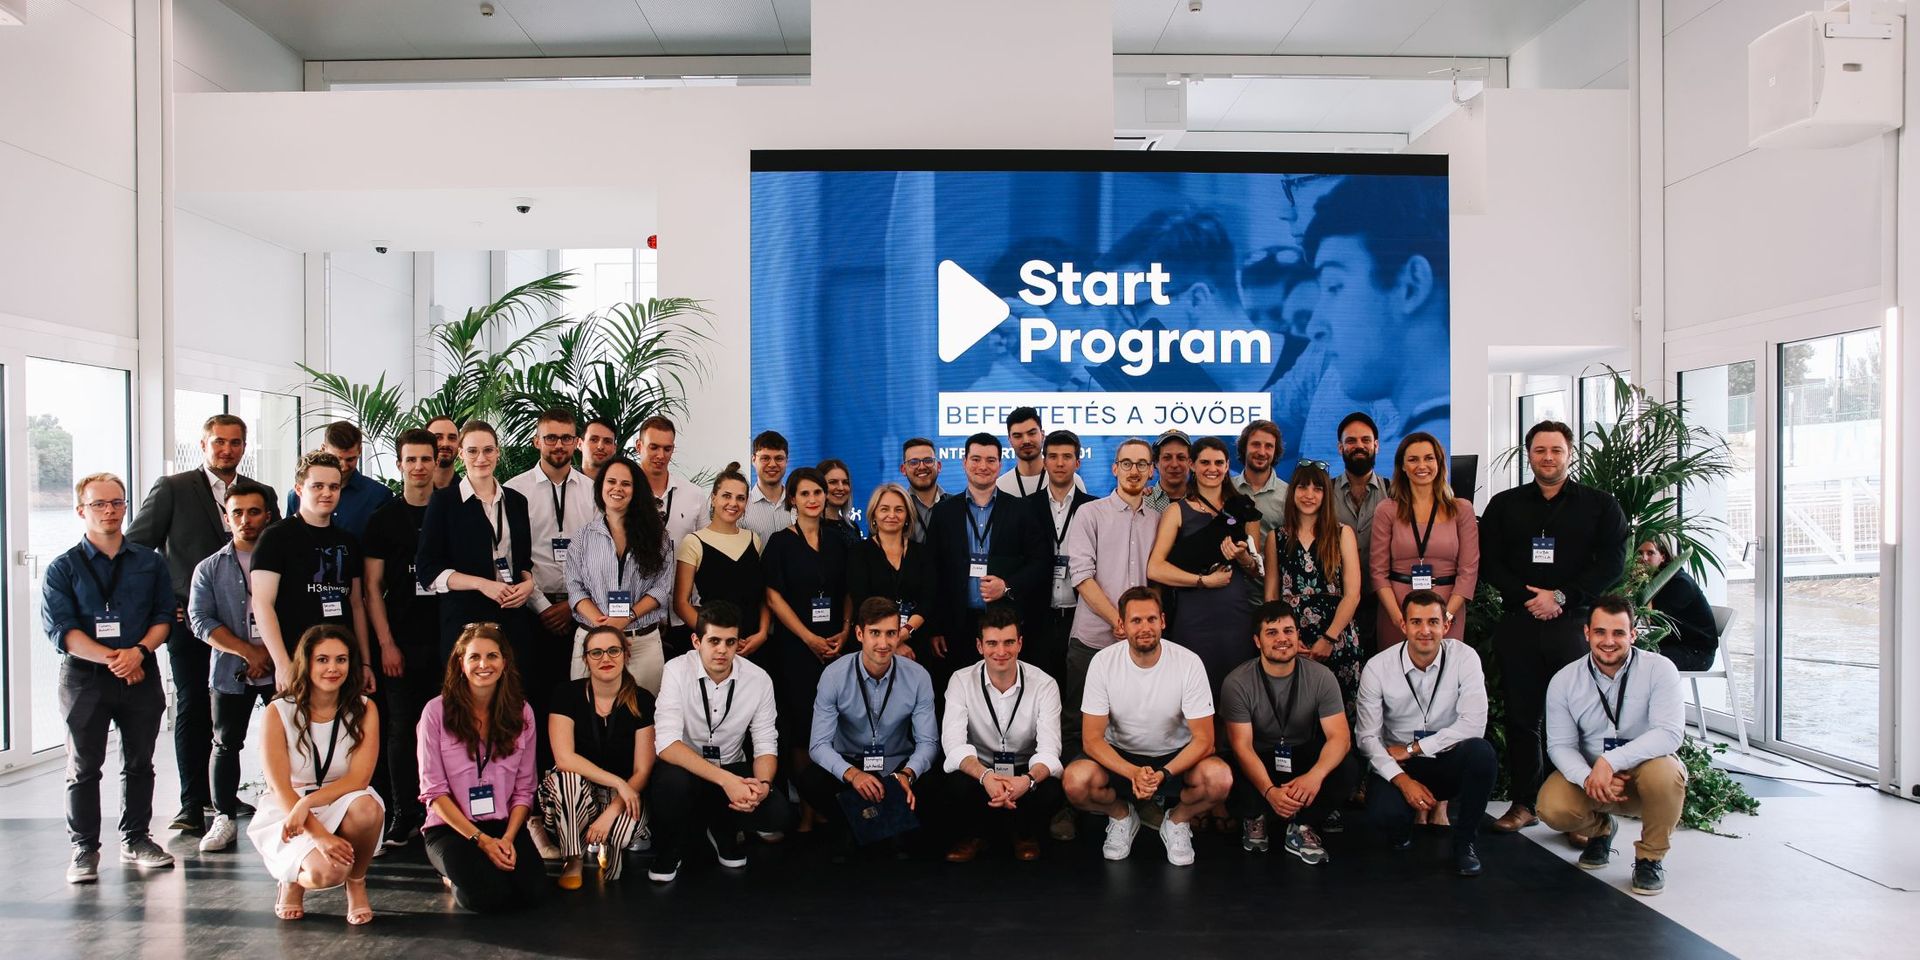 Véget ért a kezdő vállalkozókat támogató Start program